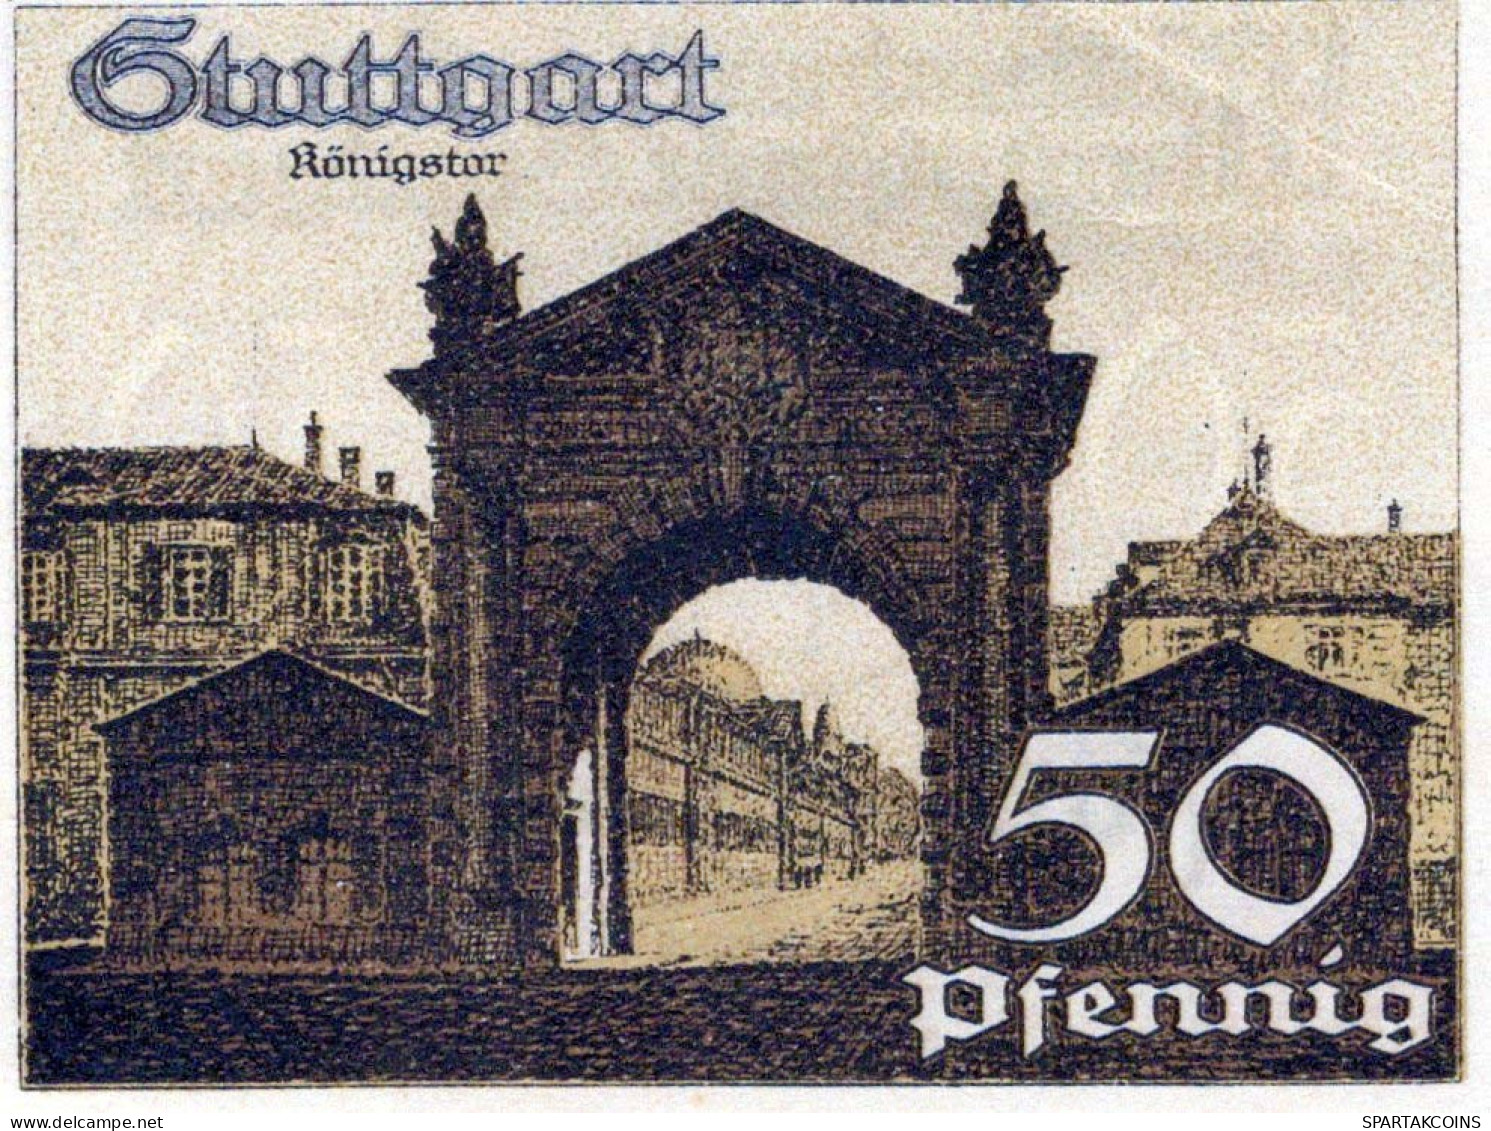 50 PFENNIG 1921 Stadt STUTTGART Württemberg UNC DEUTSCHLAND Notgeld #PC421 - [11] Local Banknote Issues